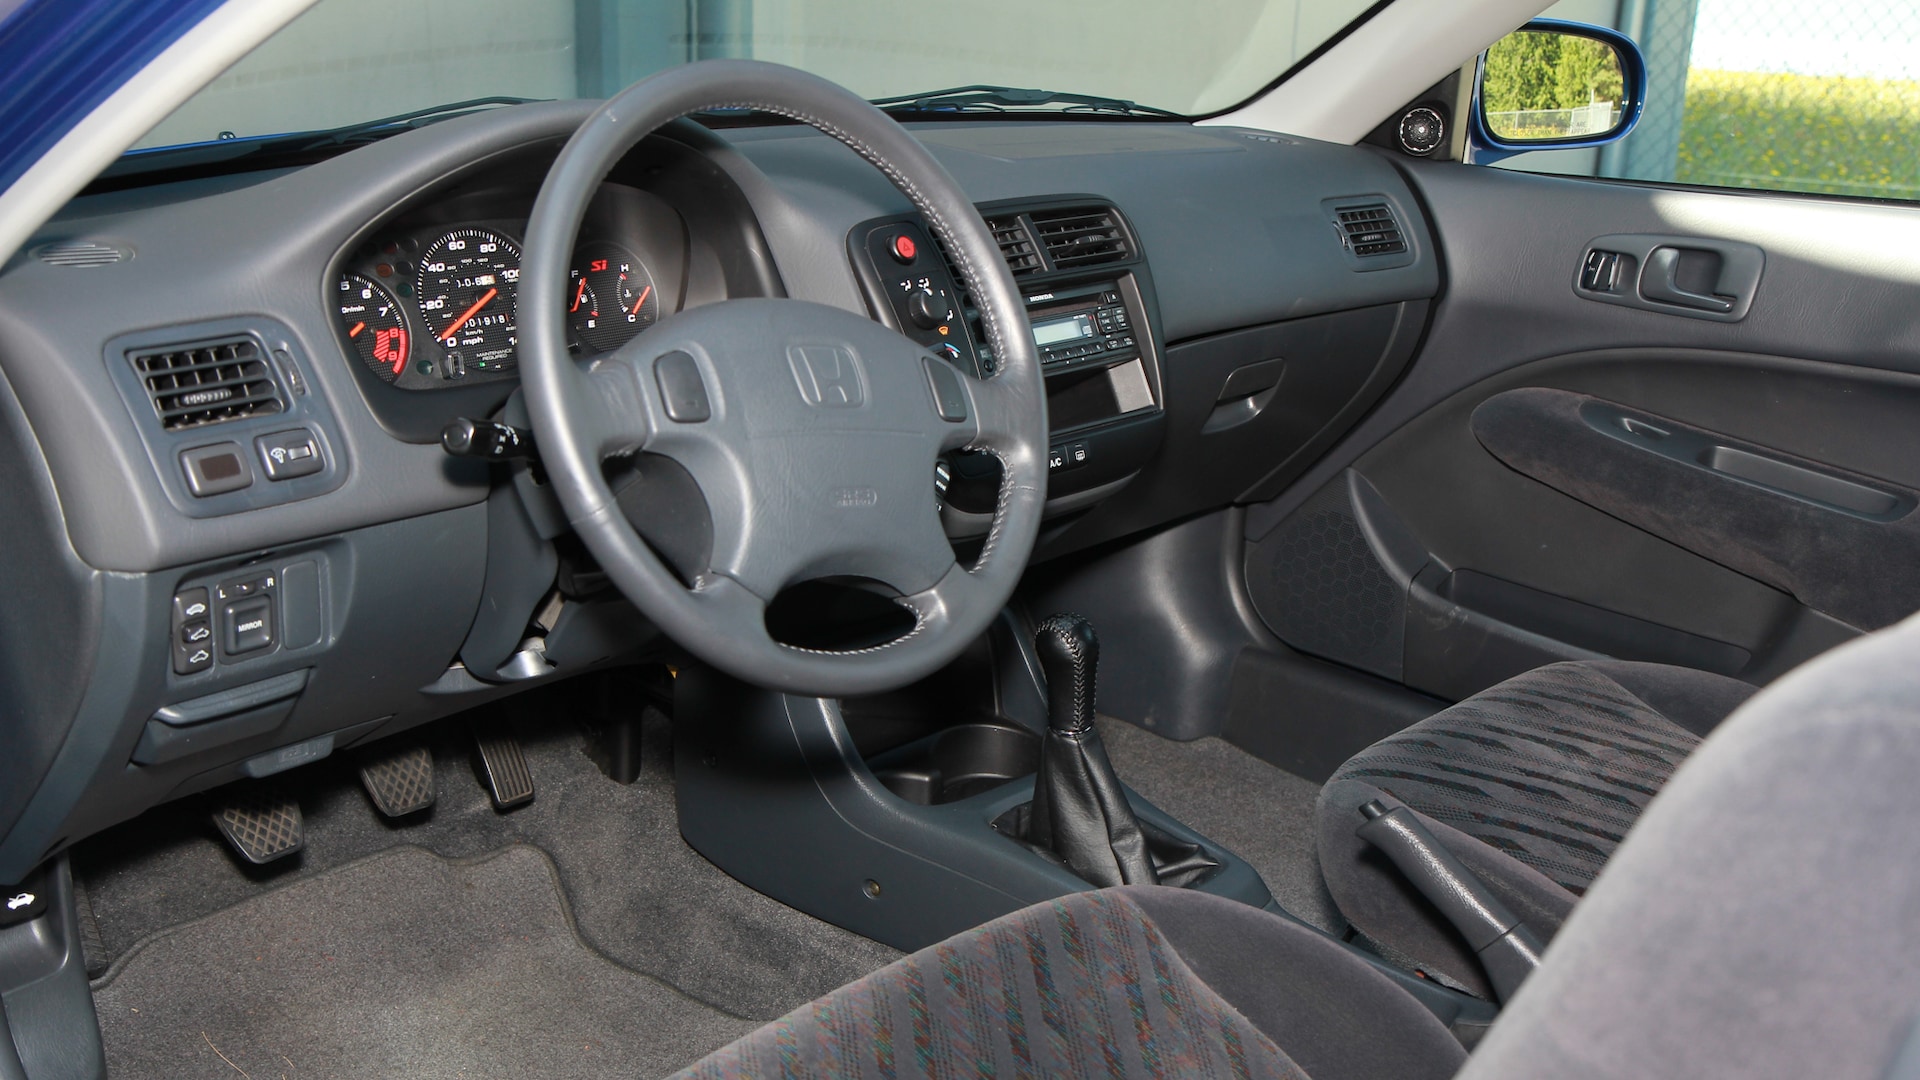 1999 Honda Civic Si Coupe interior